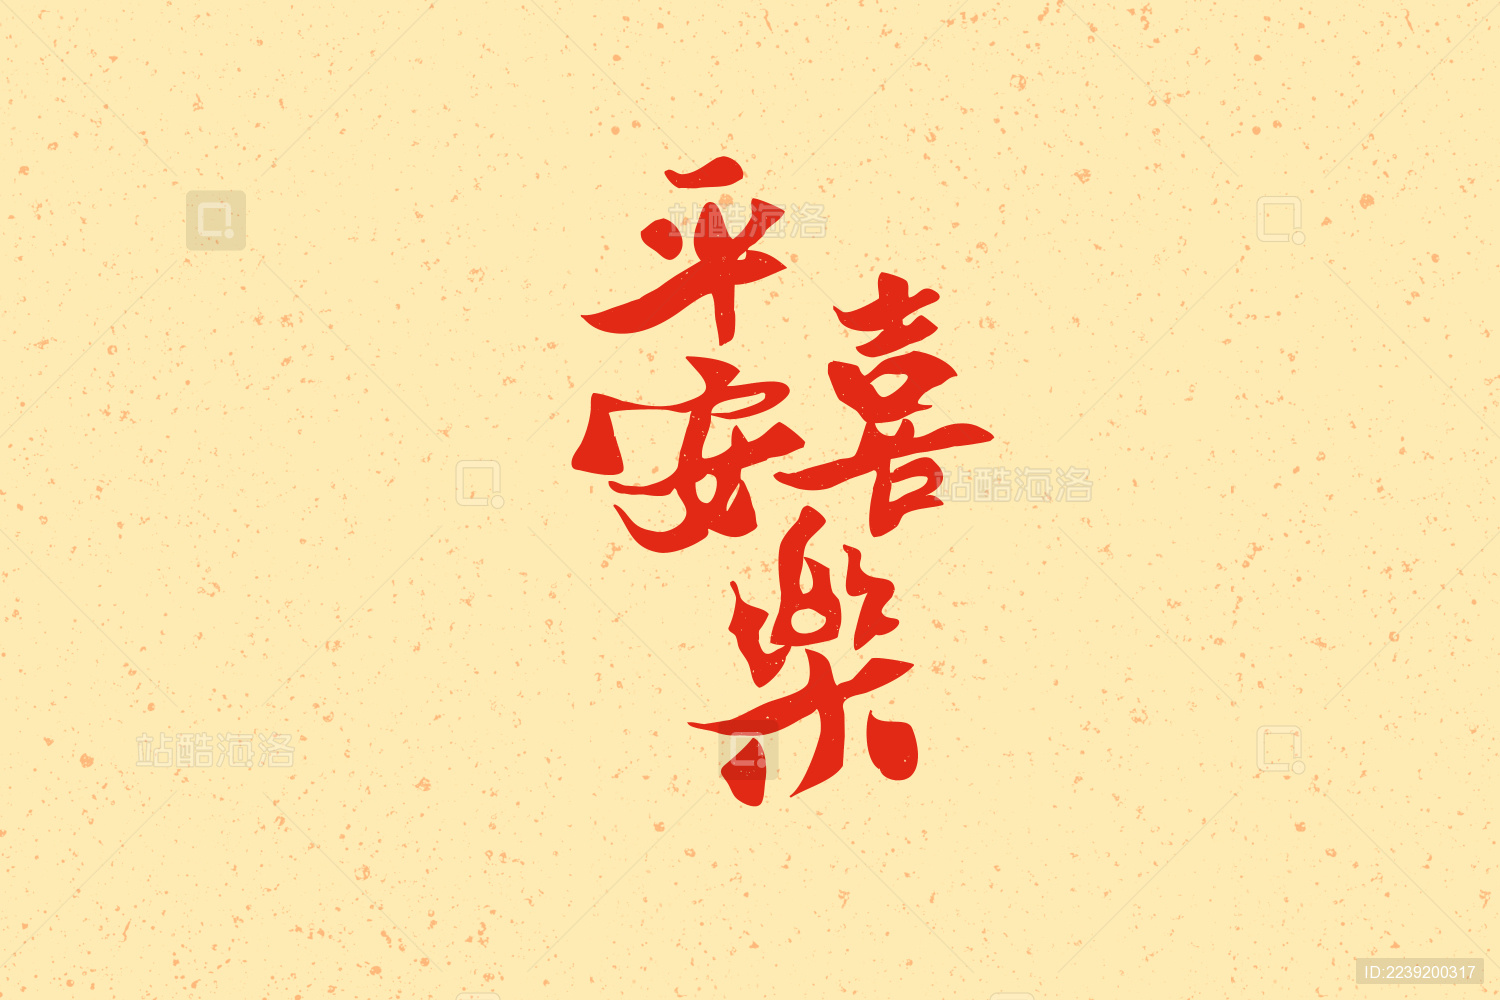 中国水墨毛笔平安艺术字体设计问候语免费下载_ai格式_2000像素_编号39919459-千图网